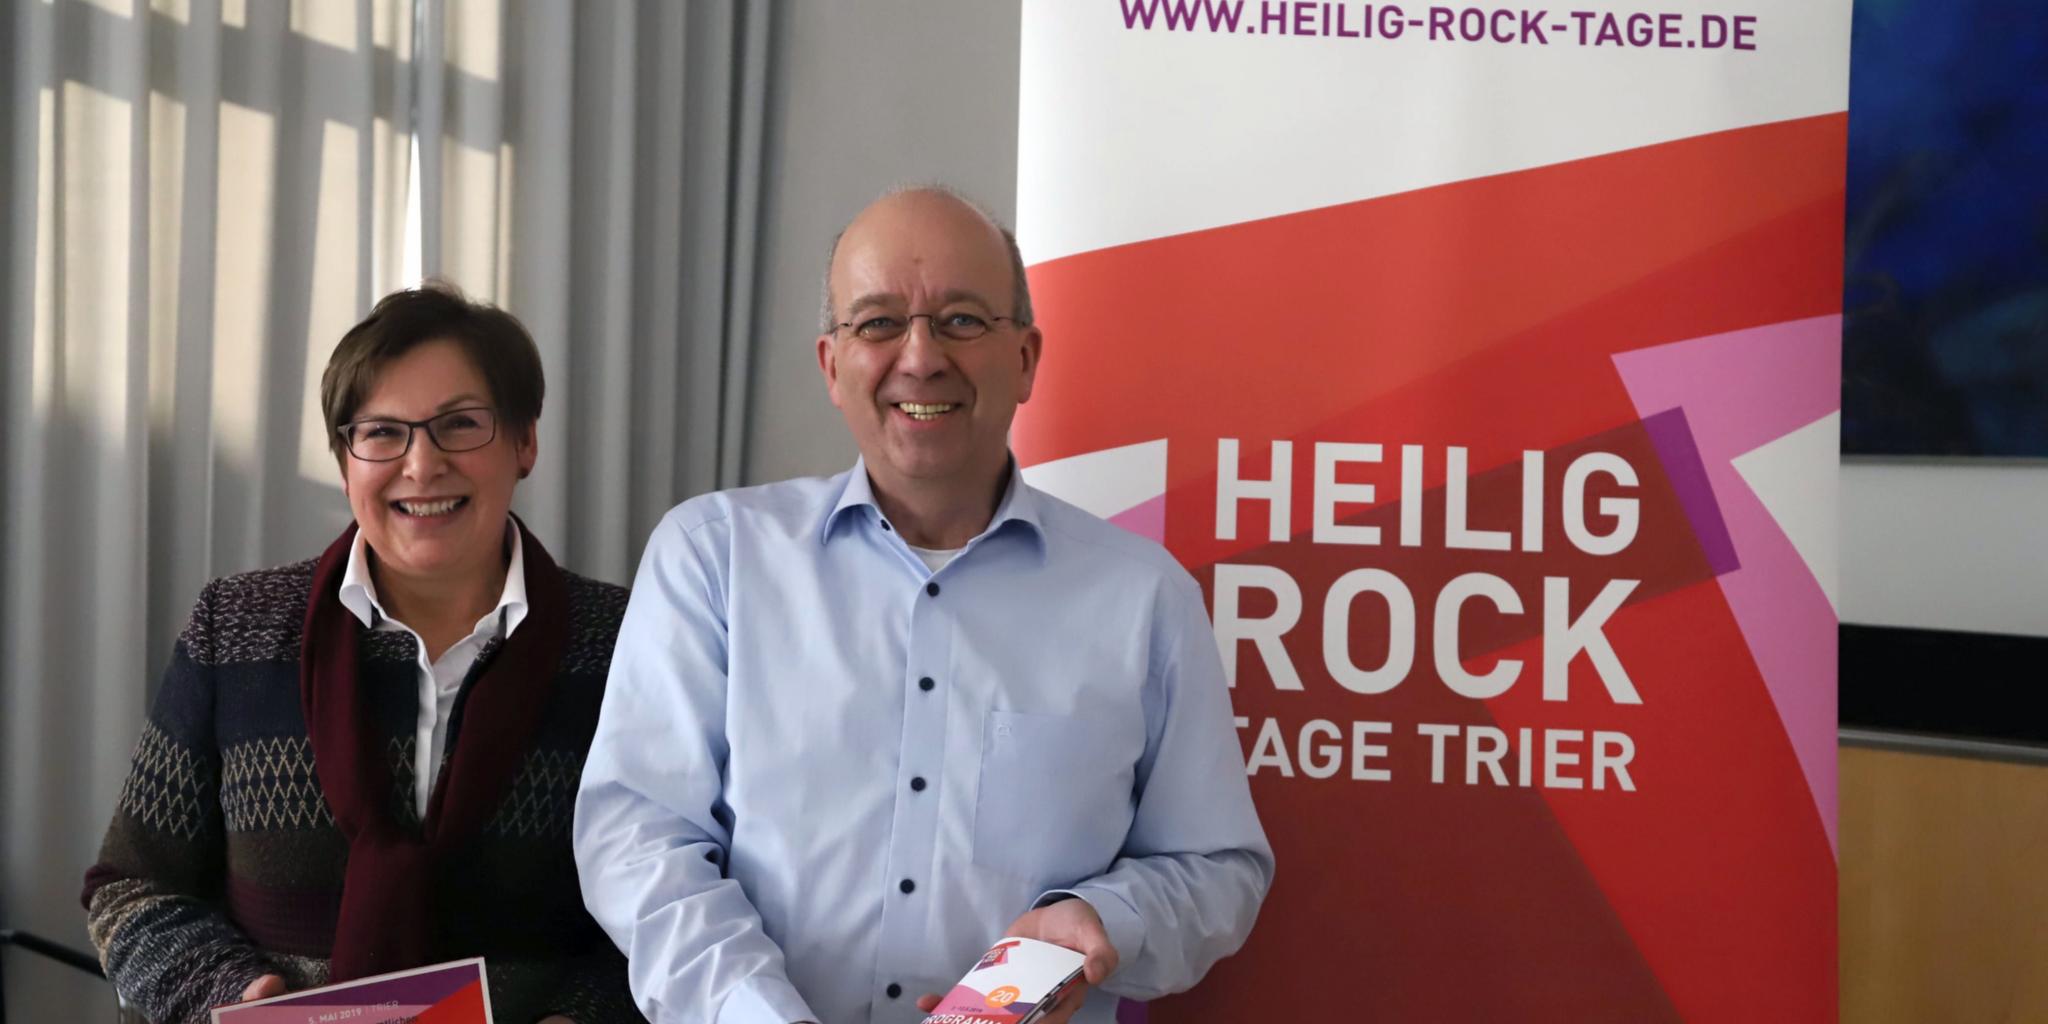 Michaela Tholl und Wolfgang Meyer stellten das Programm der Heilig-Rock-Tage 2019 vor.